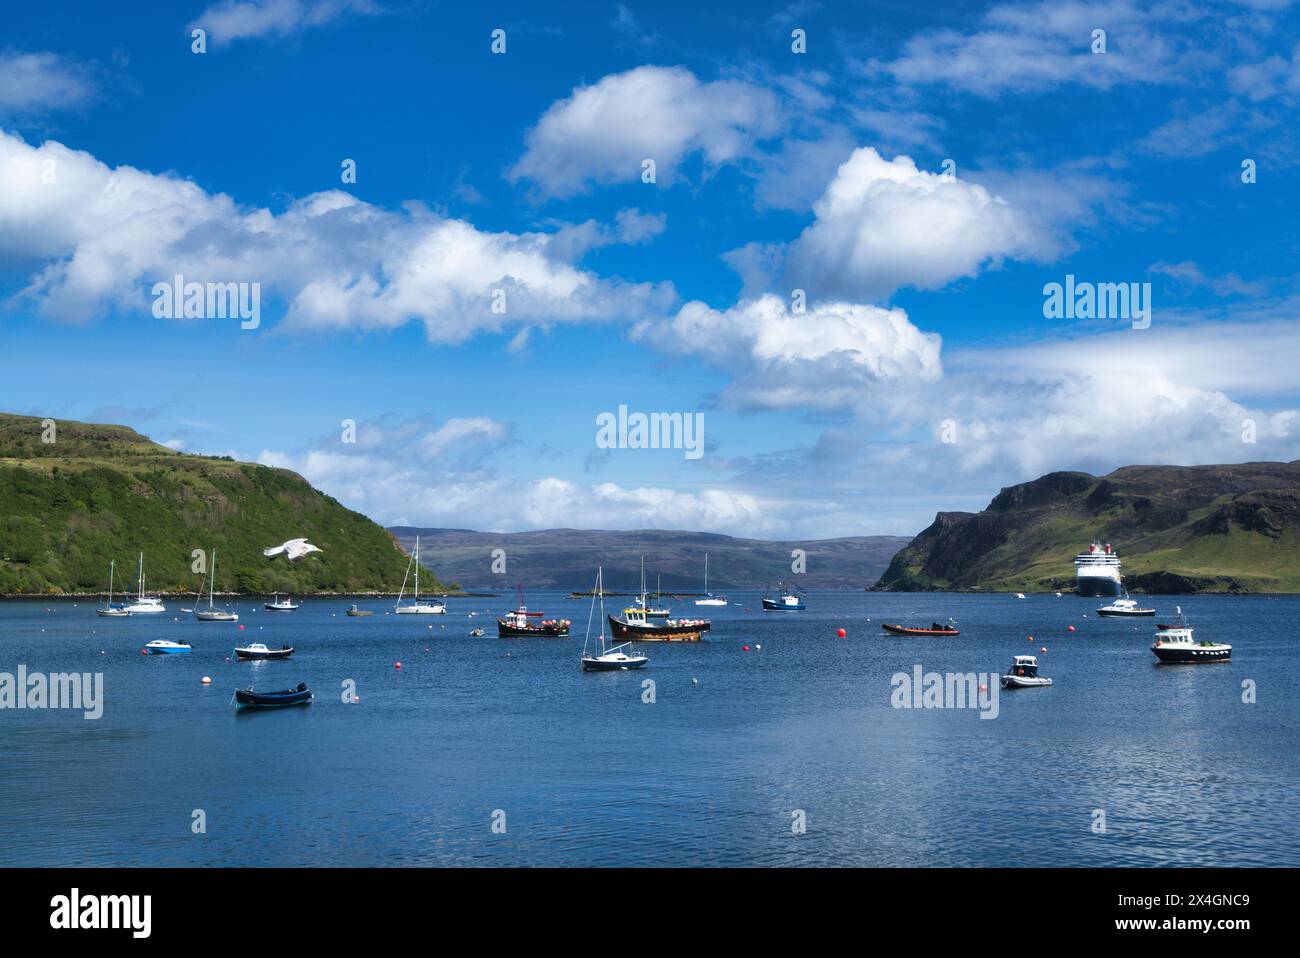 Portree. Vue sur le Loch Portree et le Sound of Raasay depuis le port coloré de Portree et le front de mer. bateaux dans le port. Skye, Highlands, Écosse, Royaume-Uni Banque D'Images